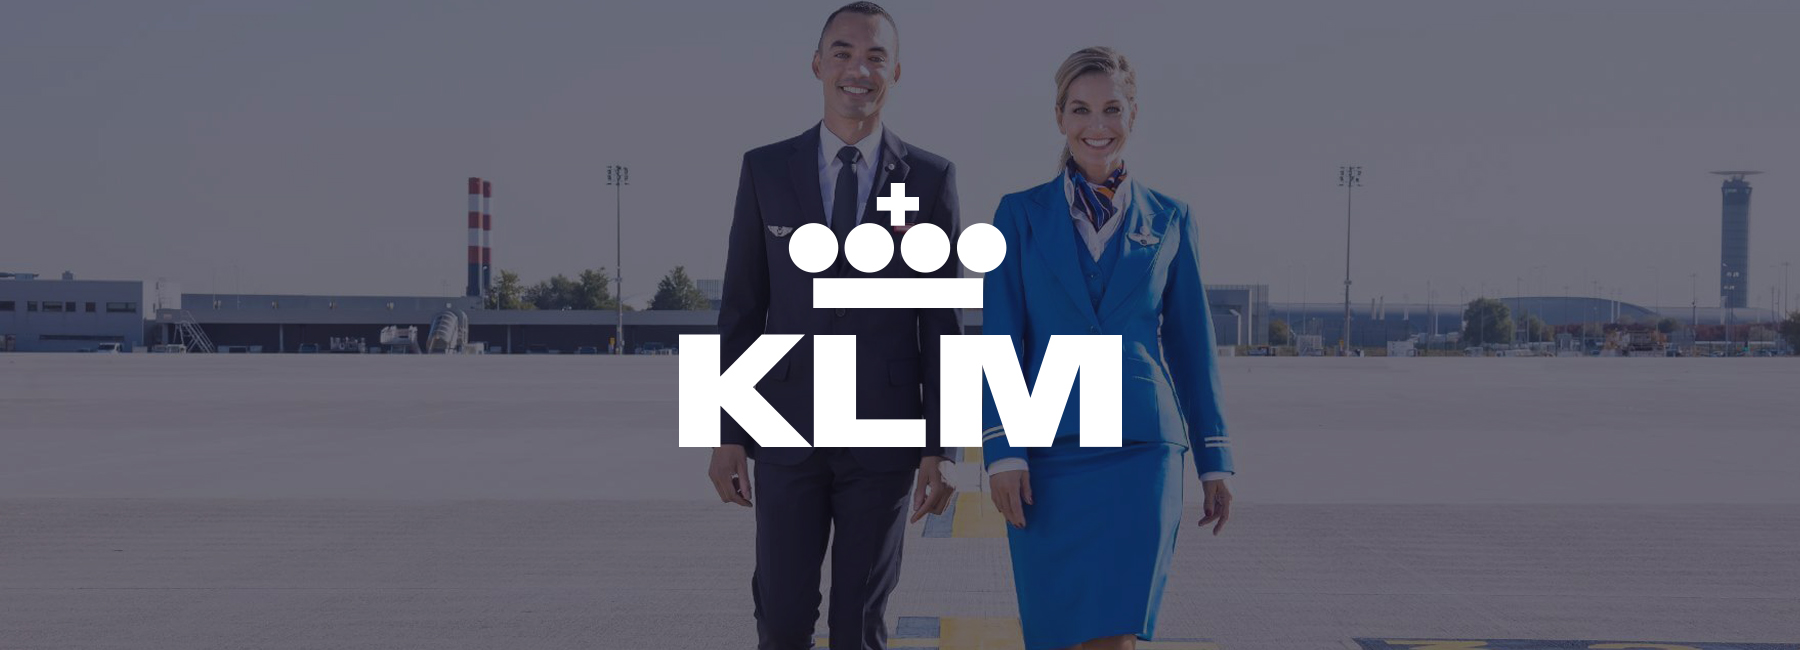 Air France-KLM mejora su sistema interno de conocimiento con Mopinion